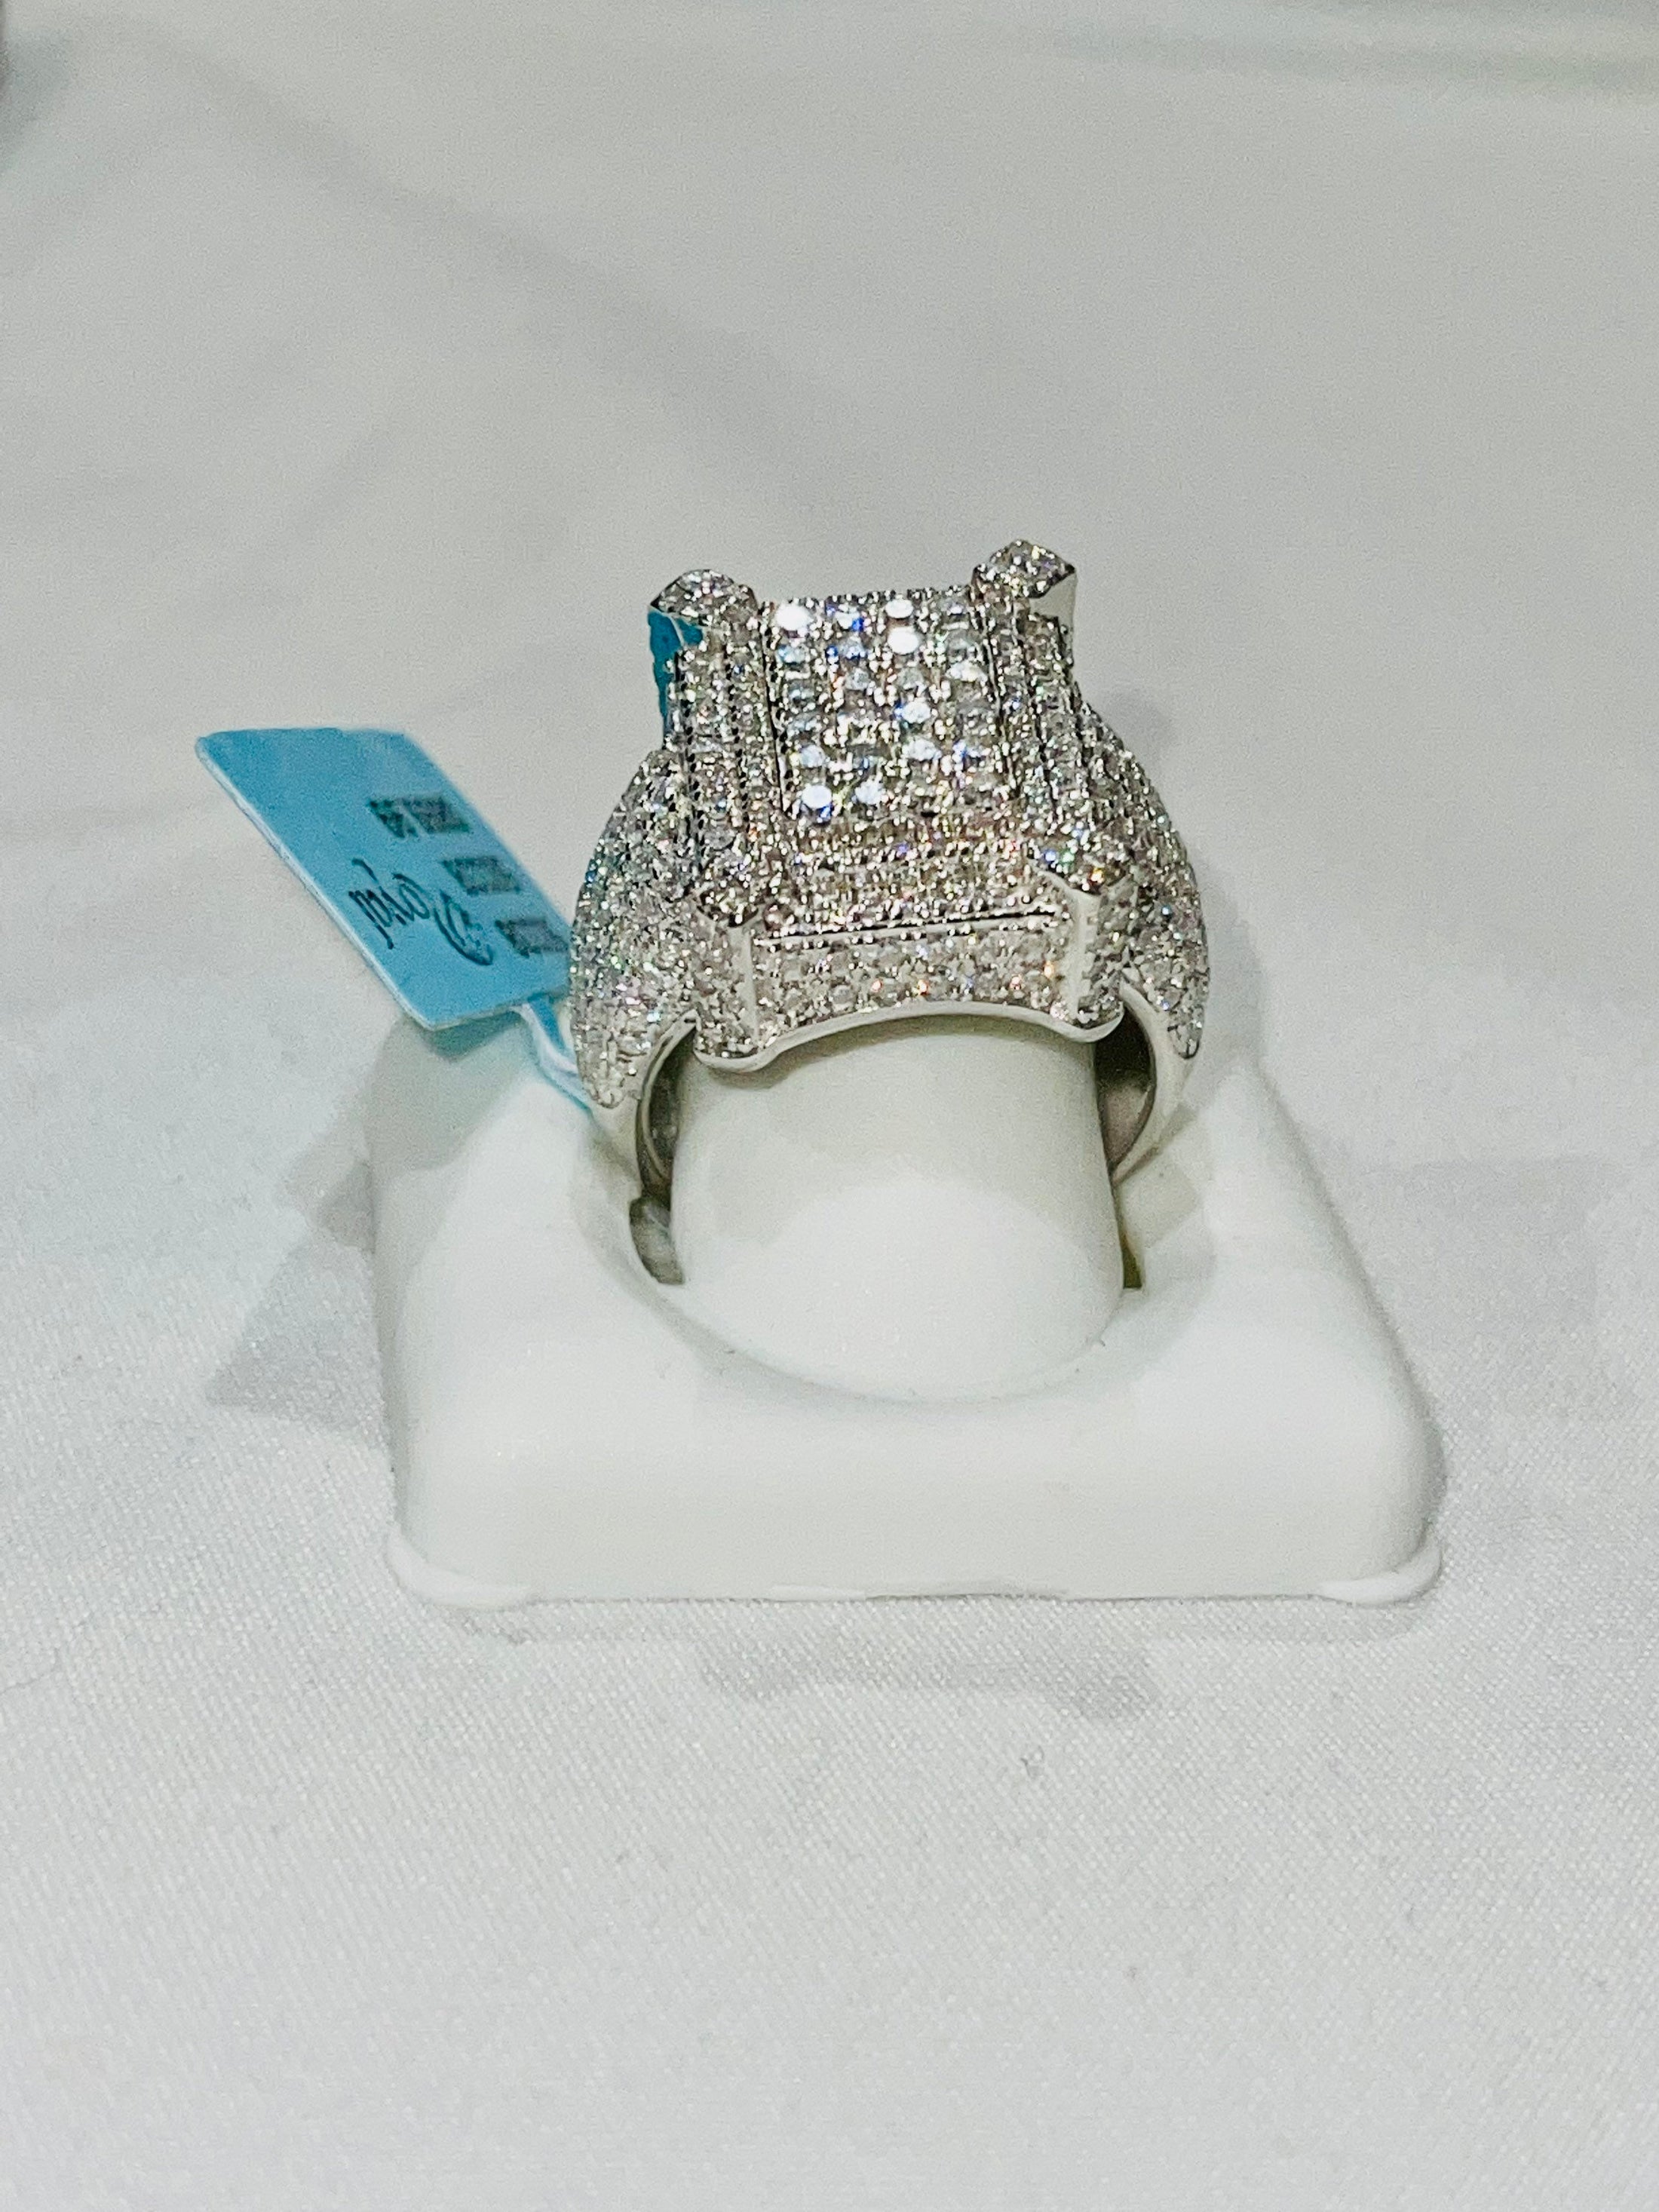 VS D Clarity GRA Certified Mens Iced out Ring, 14k Gold Vermeil Lab Grown Moissanite Diamond Custom ring for men, Best Gift For Him, anniver